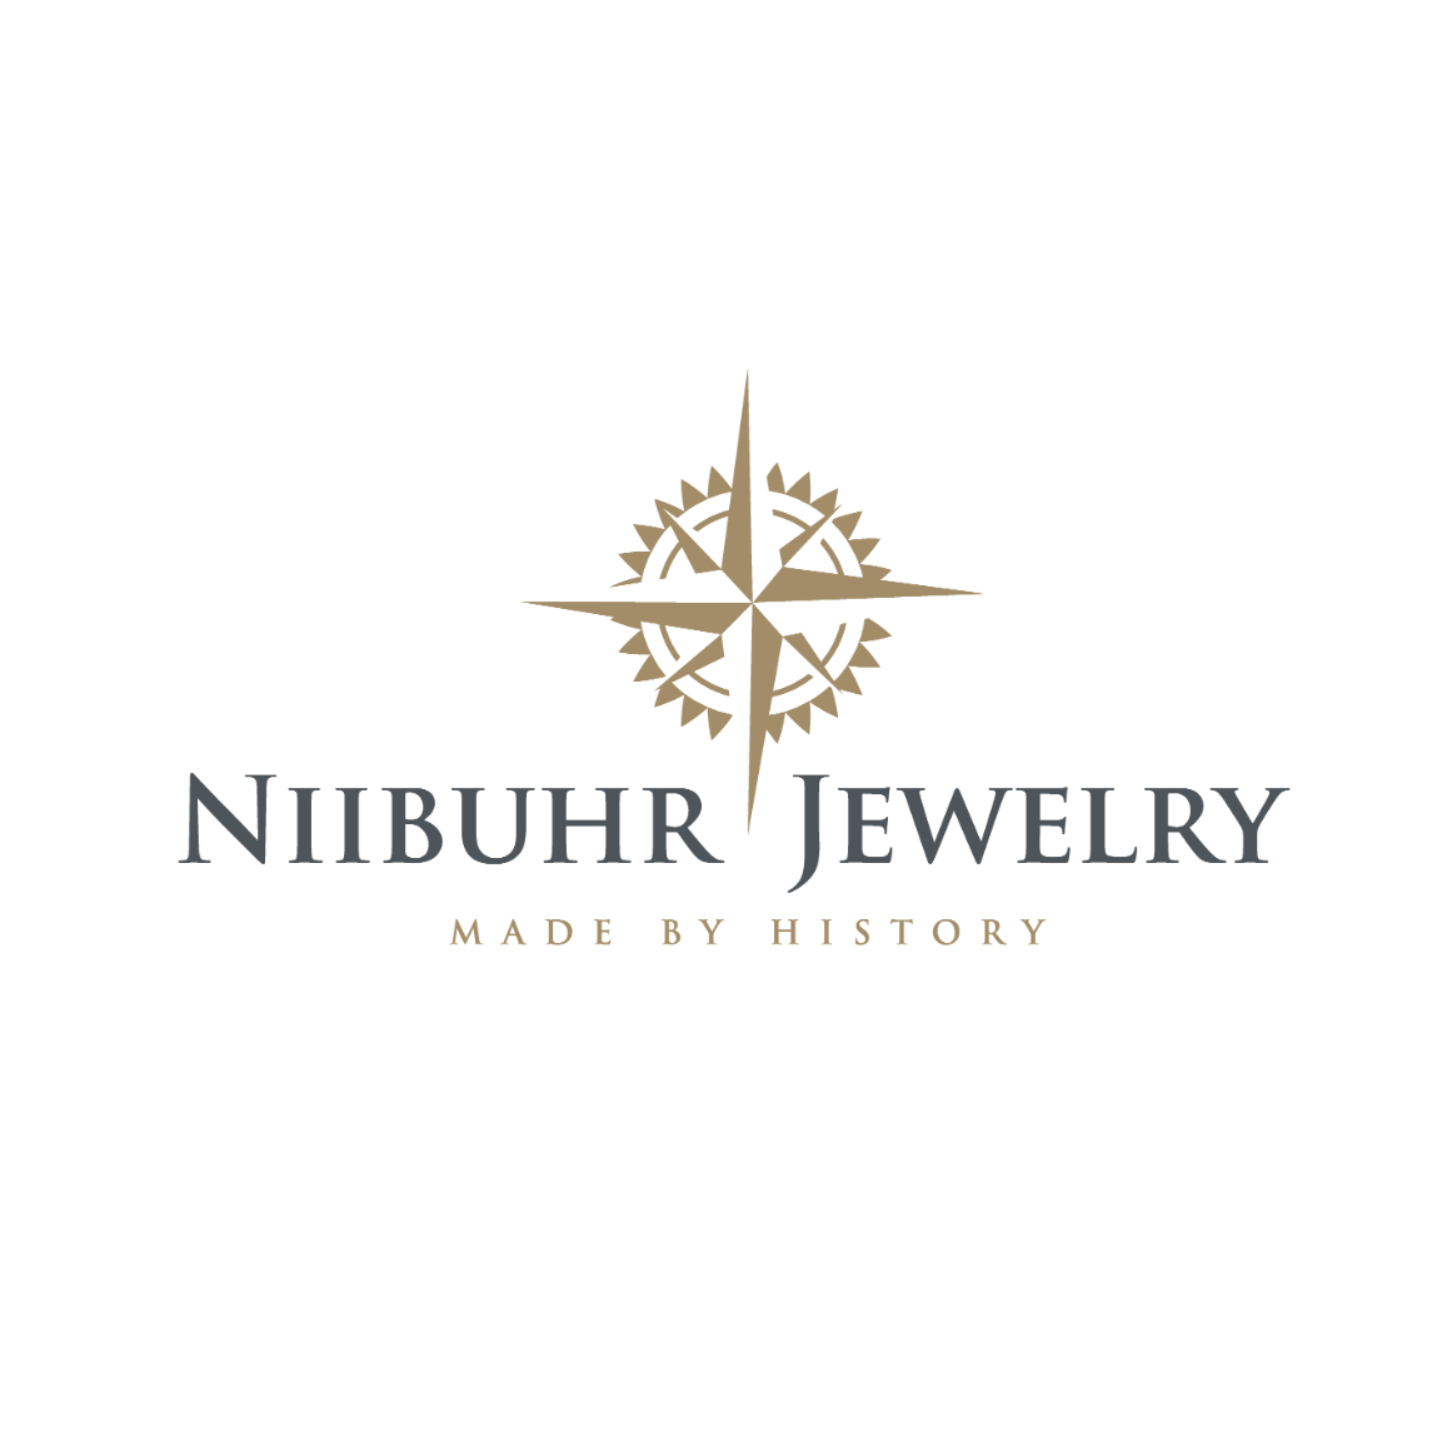 Praktikmulighed indenfor Online Markedsføring hos Niibuhr Jewelry